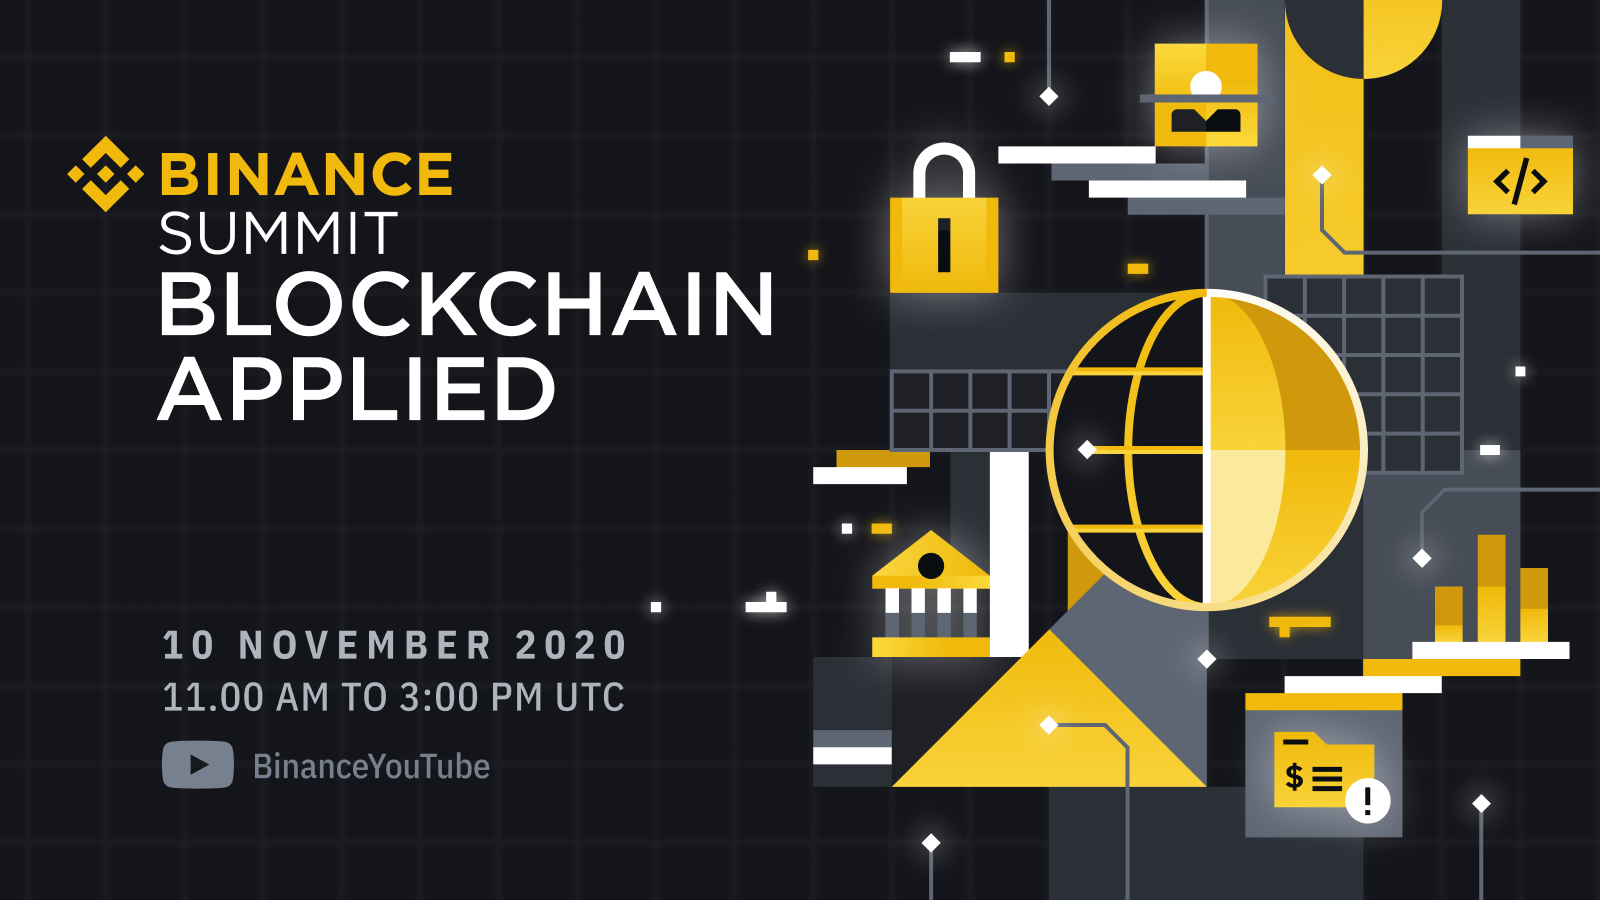 Join the Binance Summit: Blockchain Applied on November 10